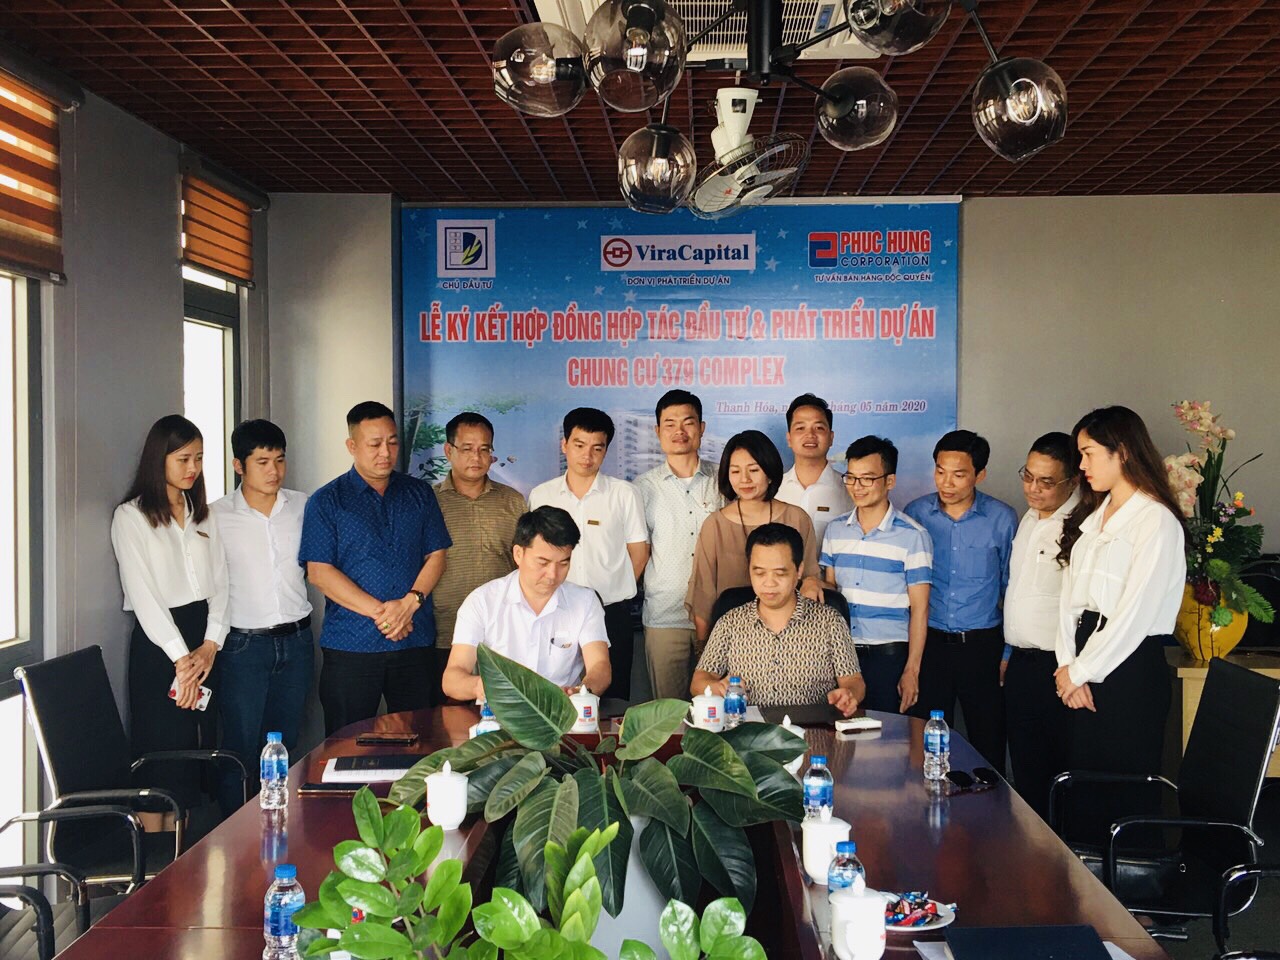 Ông Phan Tùng Tuyên – Giám đốc Công ty 379 (bên phải) Cùng Ông Đinh Xuân Thành – PhóTổng Giám Đốc Phục Hưng Corp kiêm Giám đốc ViraCapital ký hợp đồng hợp tác đầu tư